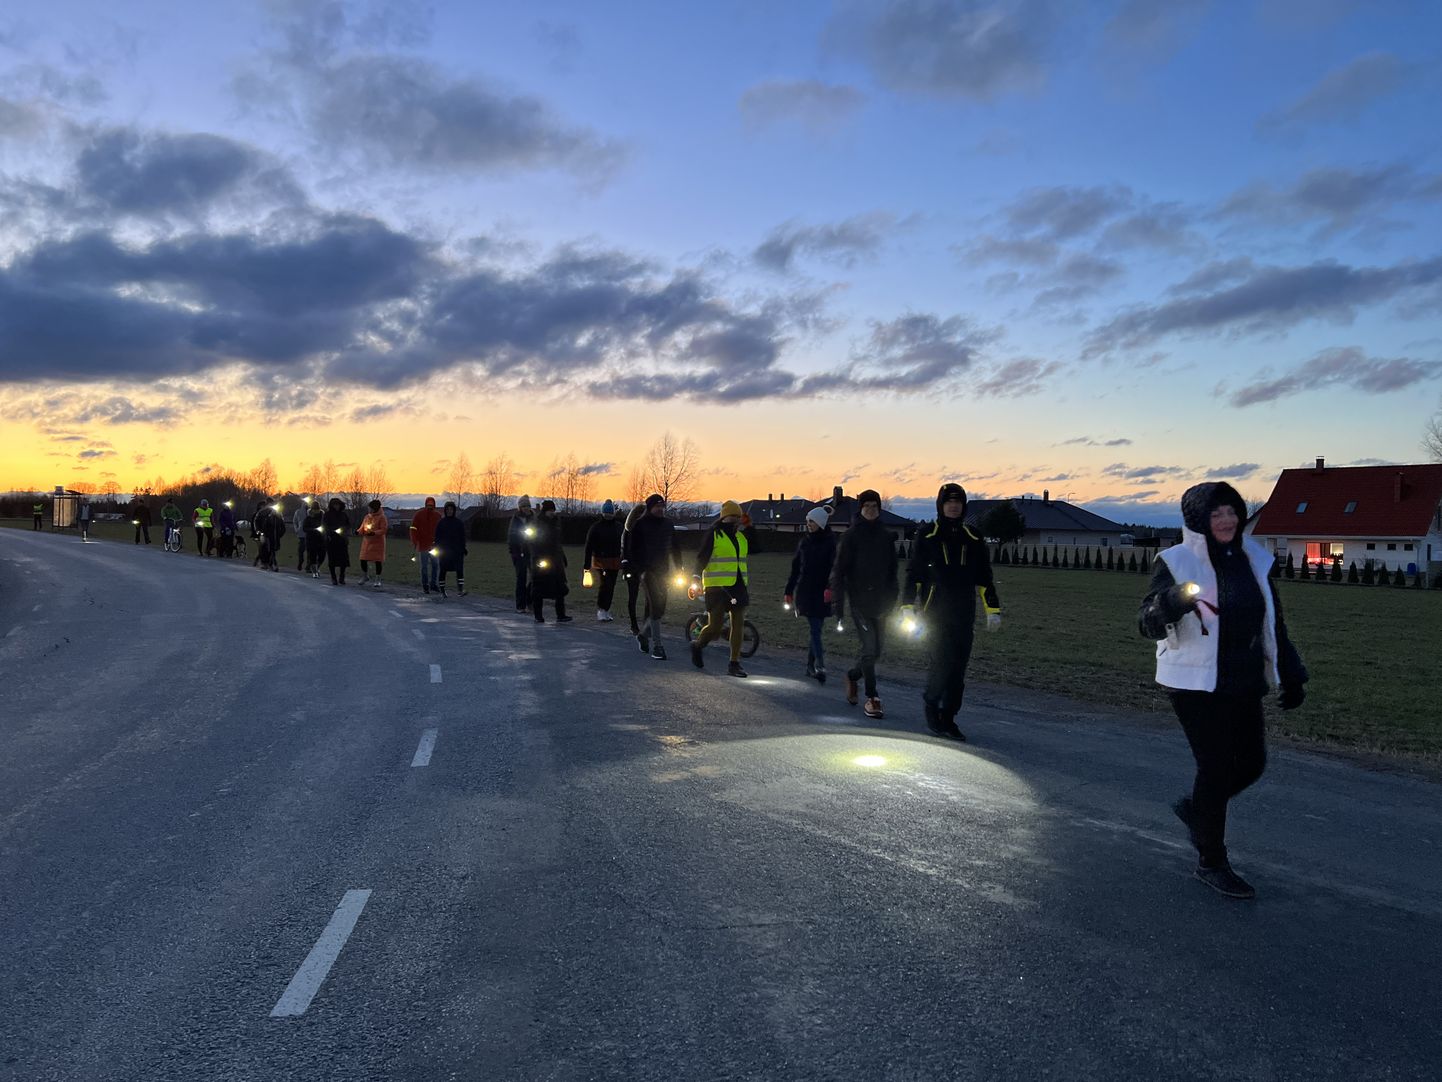 Möödunud nädalal matkasid kohalikud Järve teel taskulampide valgel, et näidata, kui suur murekoht on valgustuse puudumine sellel teelõigul.